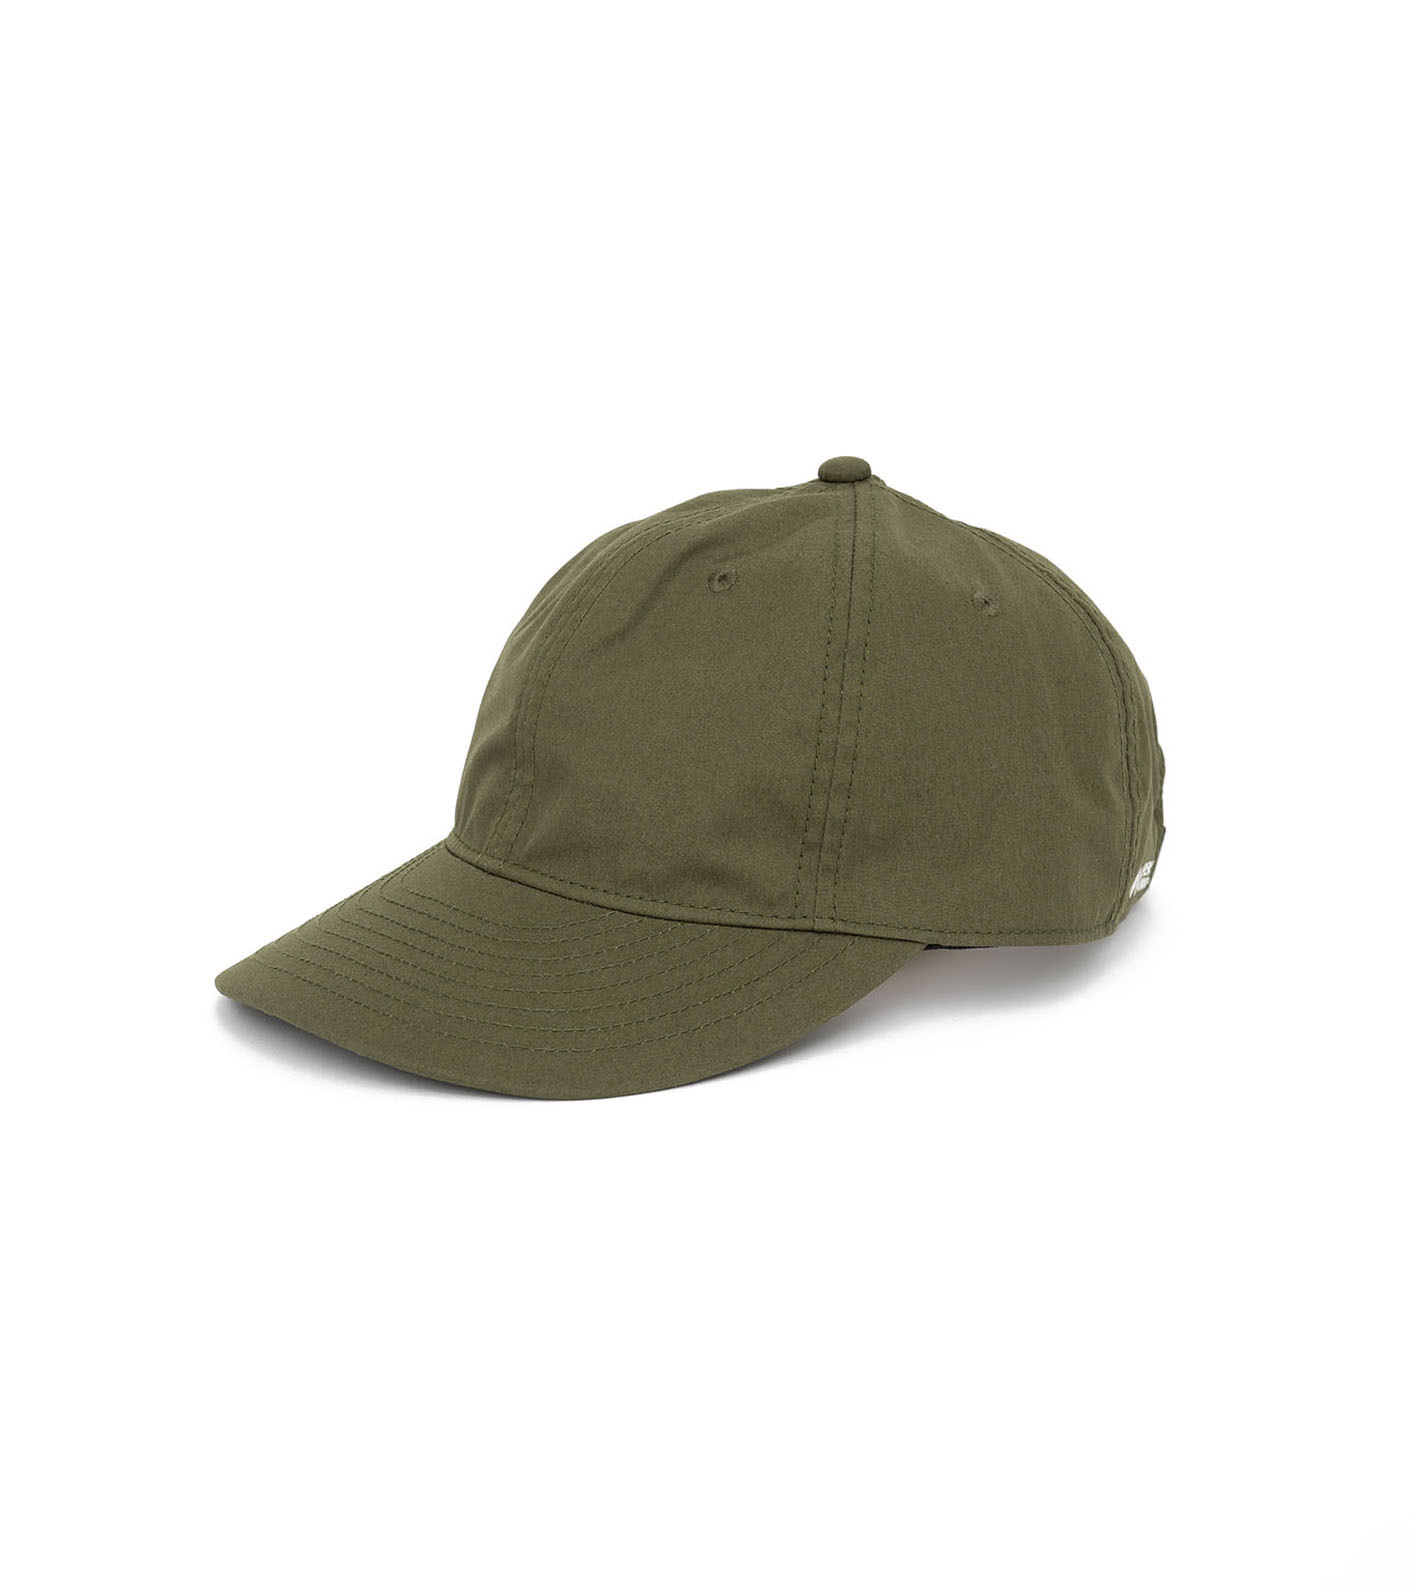 23SS THE NORTH FACE PURPLE LABEL 65/35 GORE-TEX INFINIUM™ Cap 紫標 防水棒球帽 (4色)